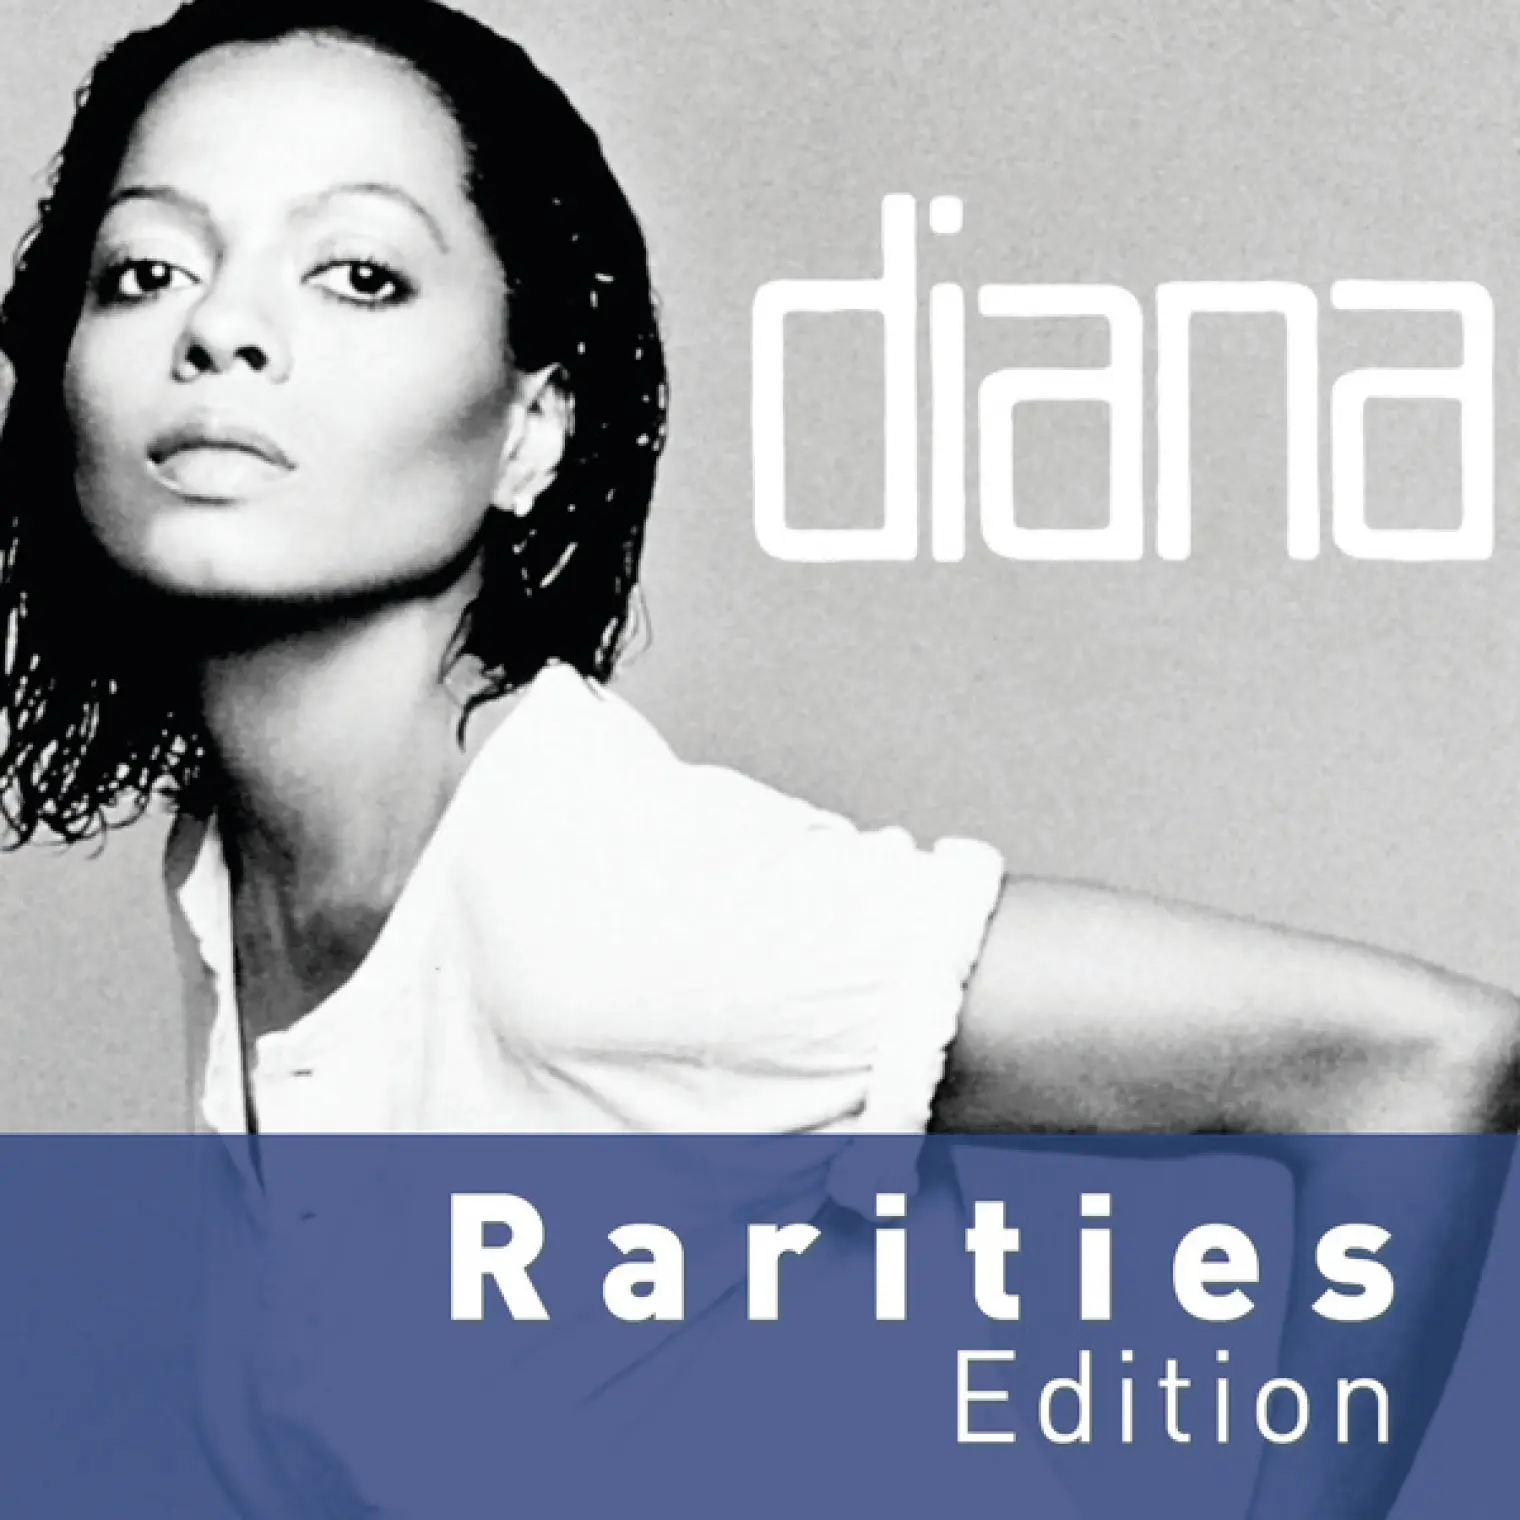 Diana (Rarities Edition) -  Diana Ross 